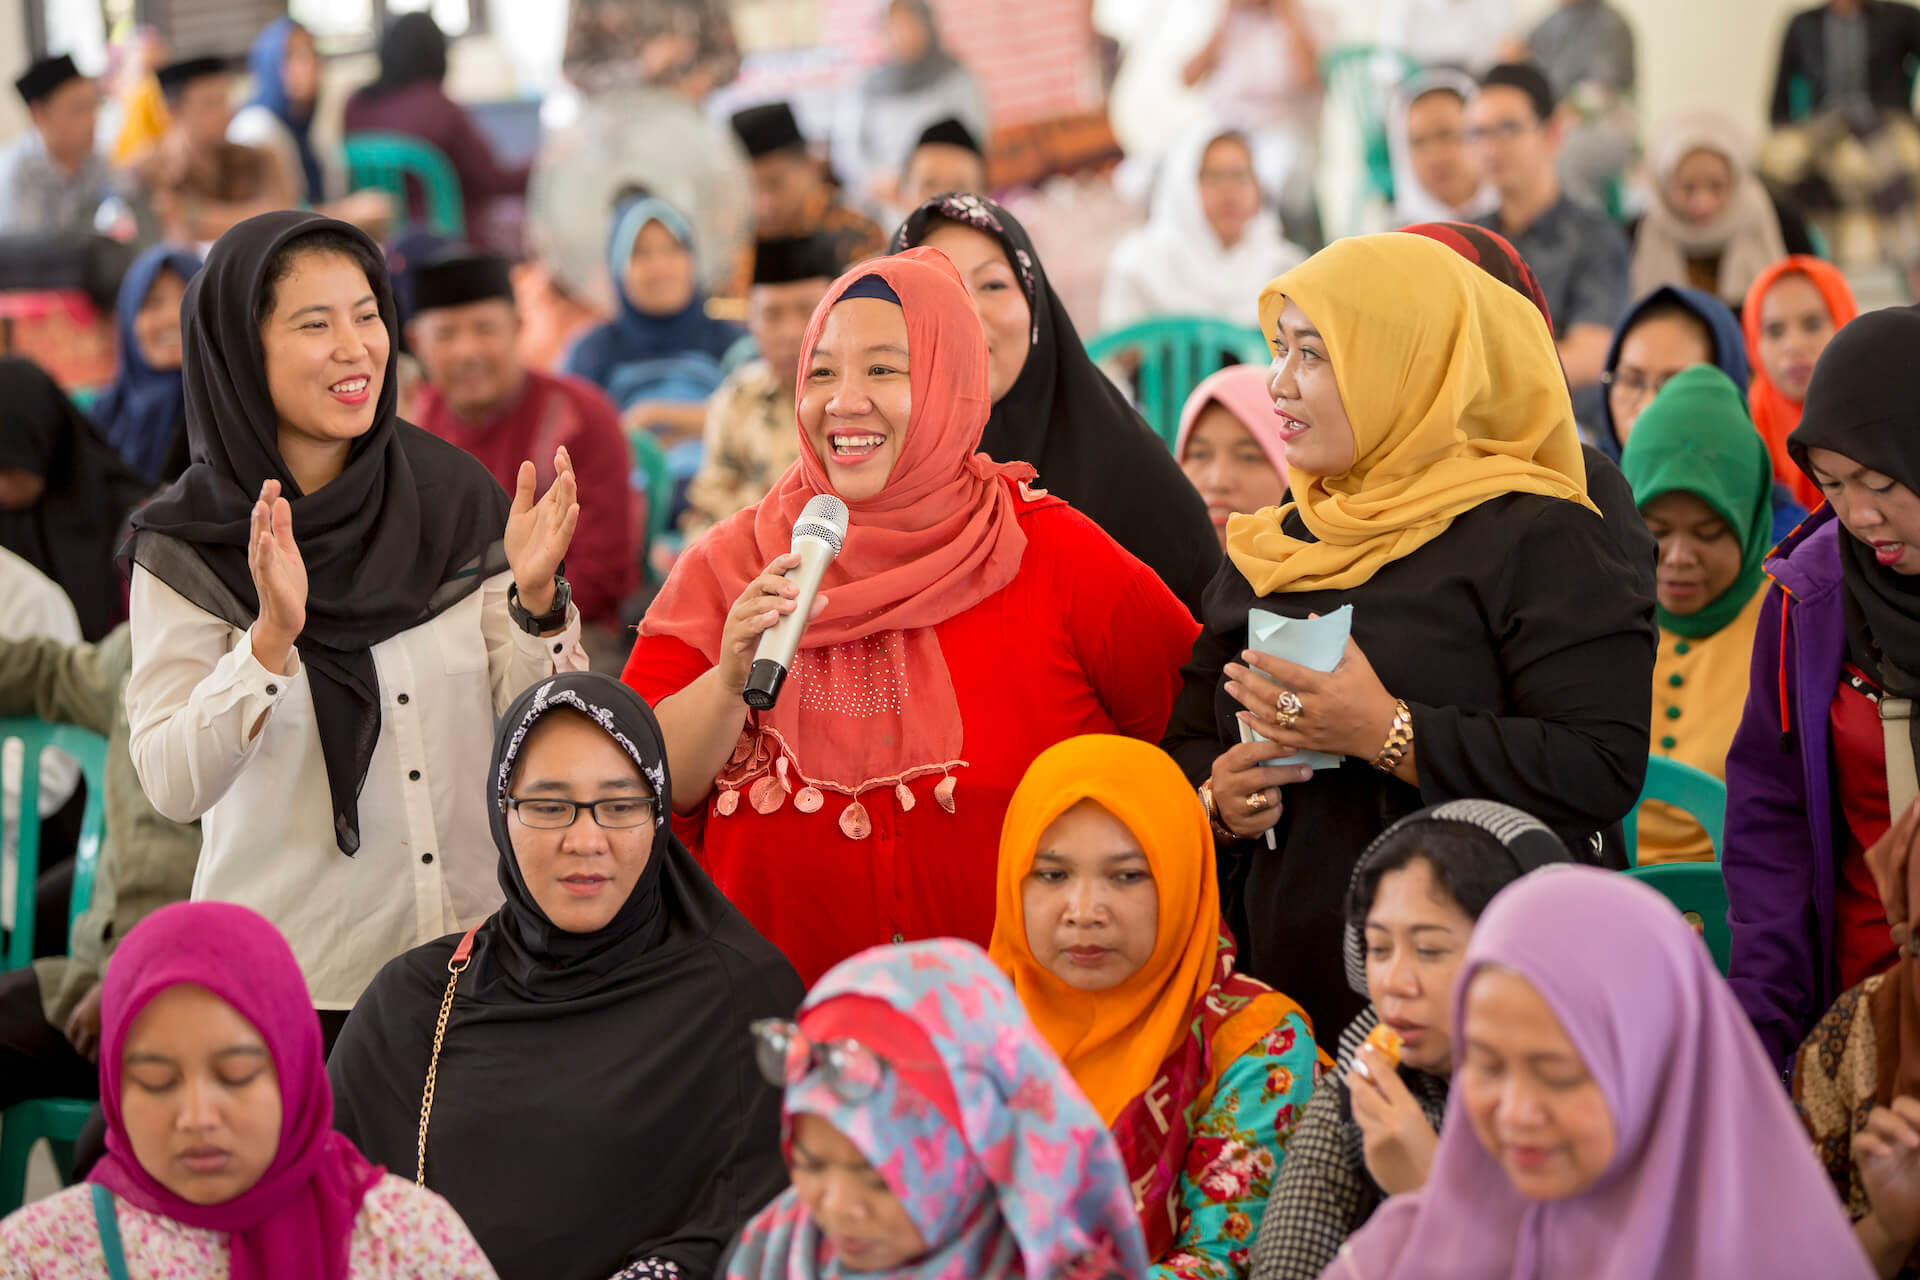 Une scène de discussions communautaires lors du rassemblement massif à Pesantren Annuqqayah - l'un des plus anciens internats islamiques du pays - sur la façon dont les femmes contribuent à la paix dans leurs communautés.